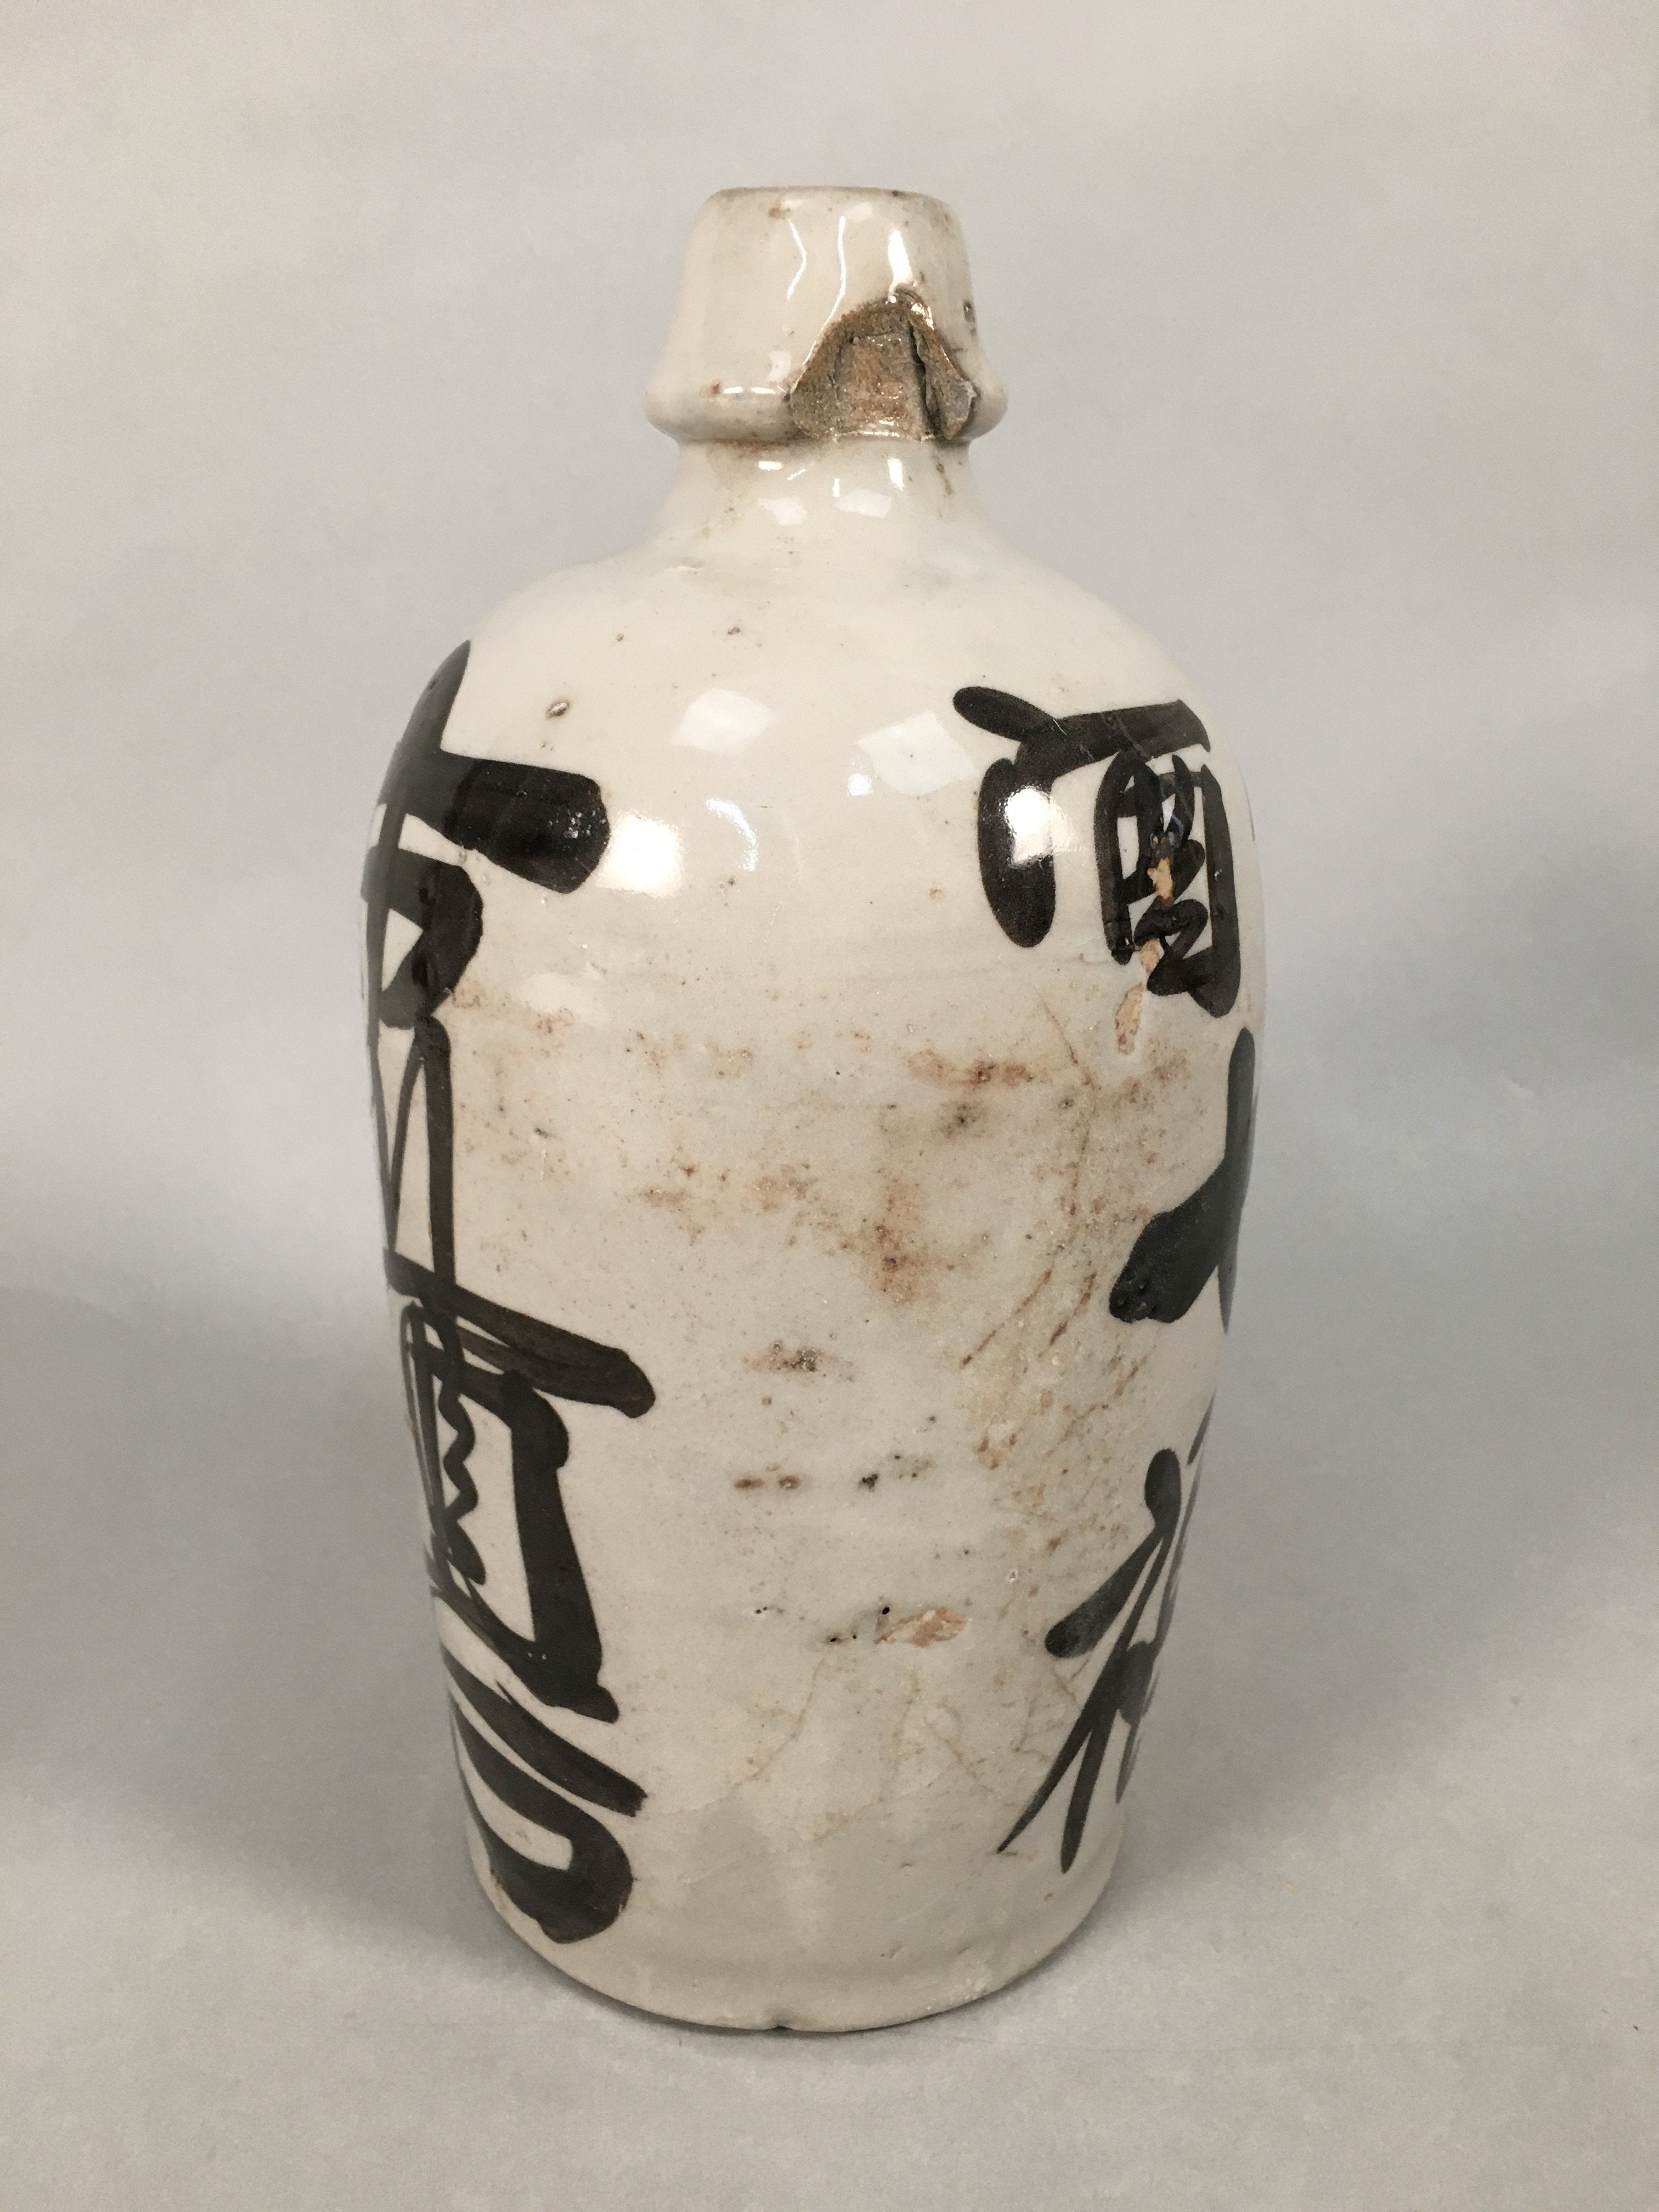 Japanese Ceramic Sake Bottle Tokkuri Vtg Pottery Gray Hand-Written Kanji TS257